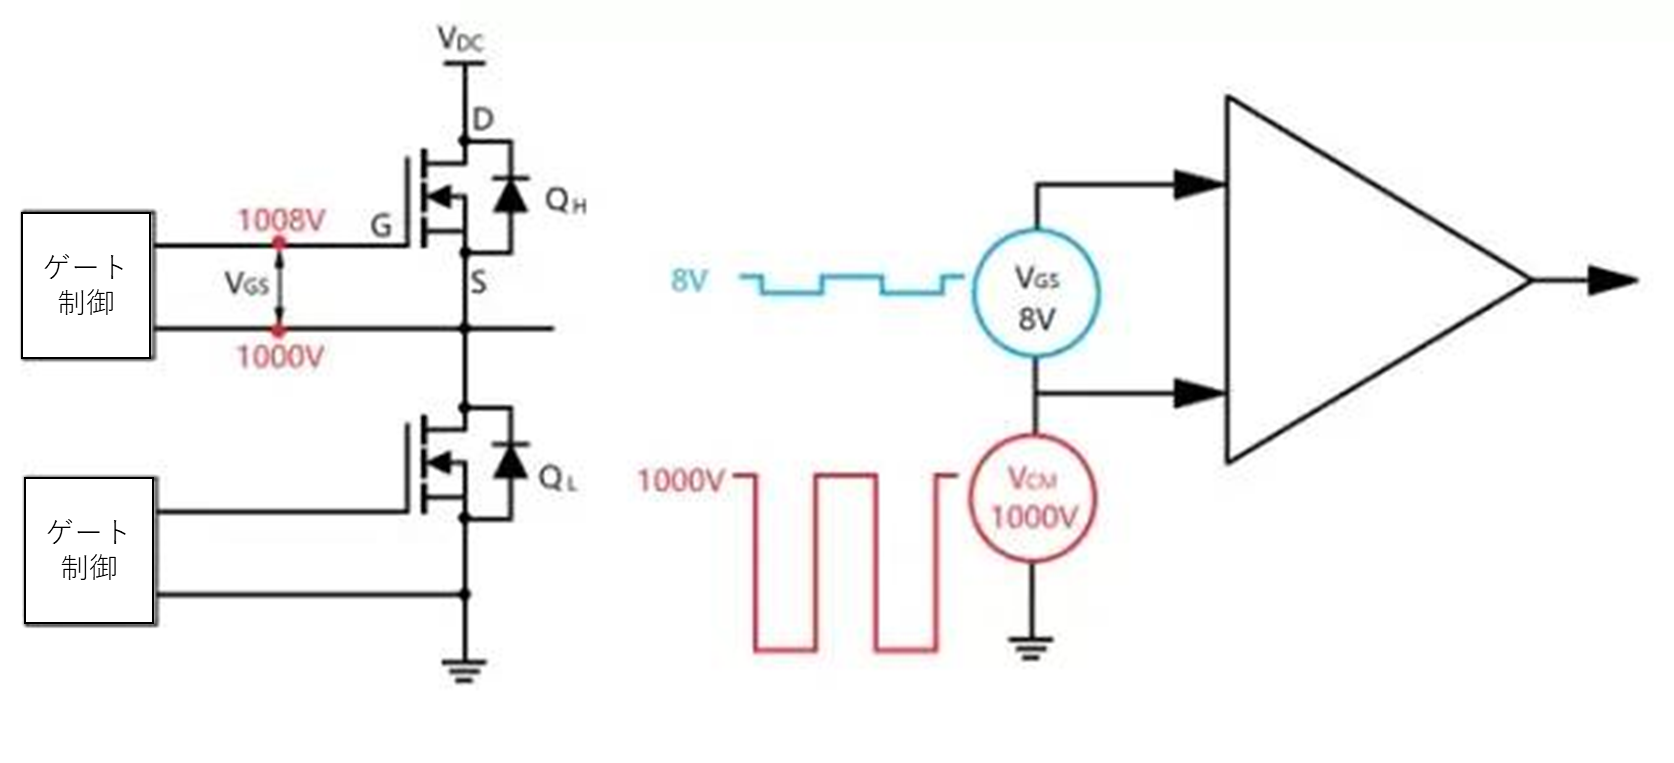 図3：上部アームのVgs電圧とコモンモード電圧Vcmの概念図